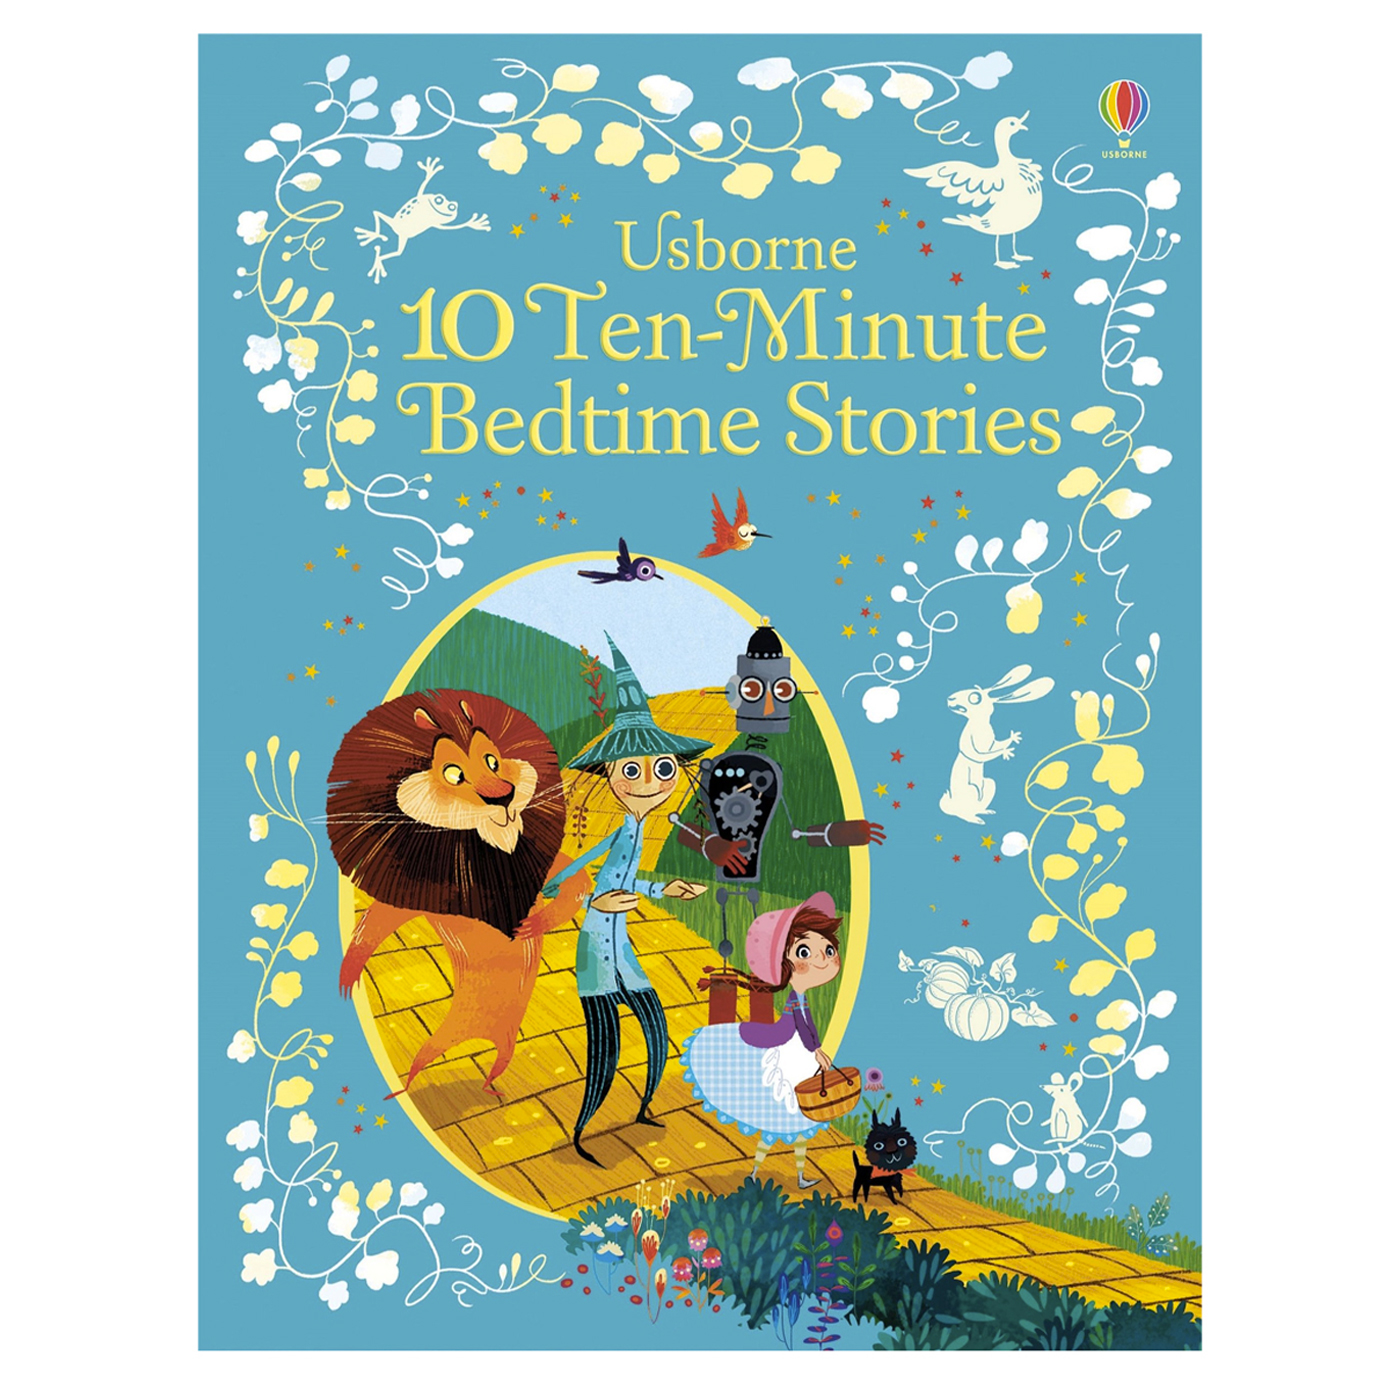  10 Ten-Minute Bedtime Stories